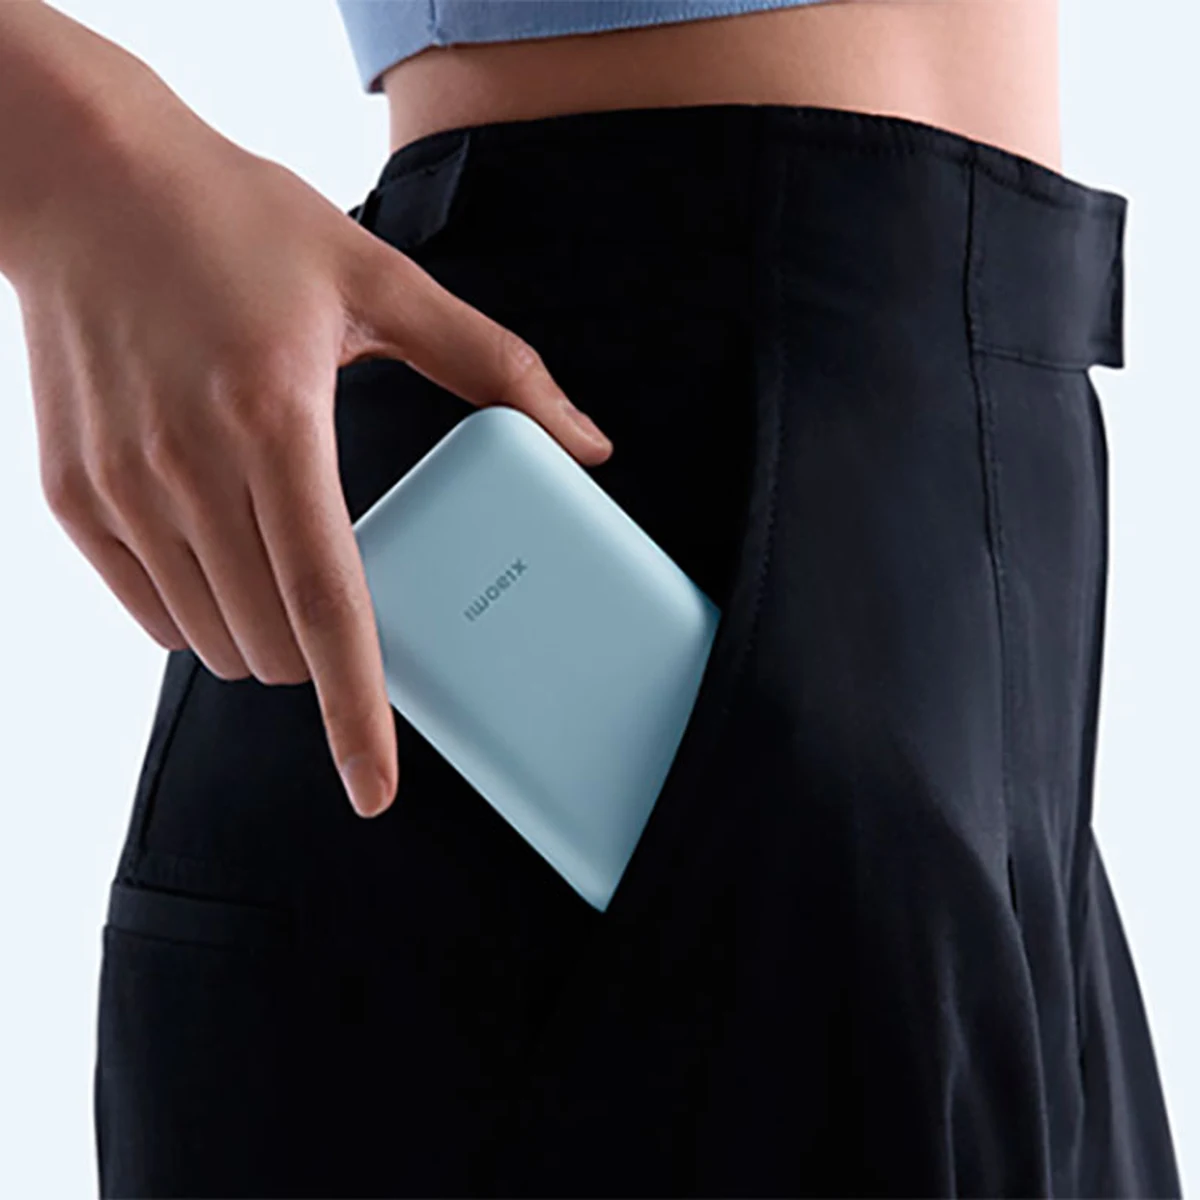 Xiaomi lanza una nueva batería externa, donde podrás conectar hasta el  portátil, Gadgets